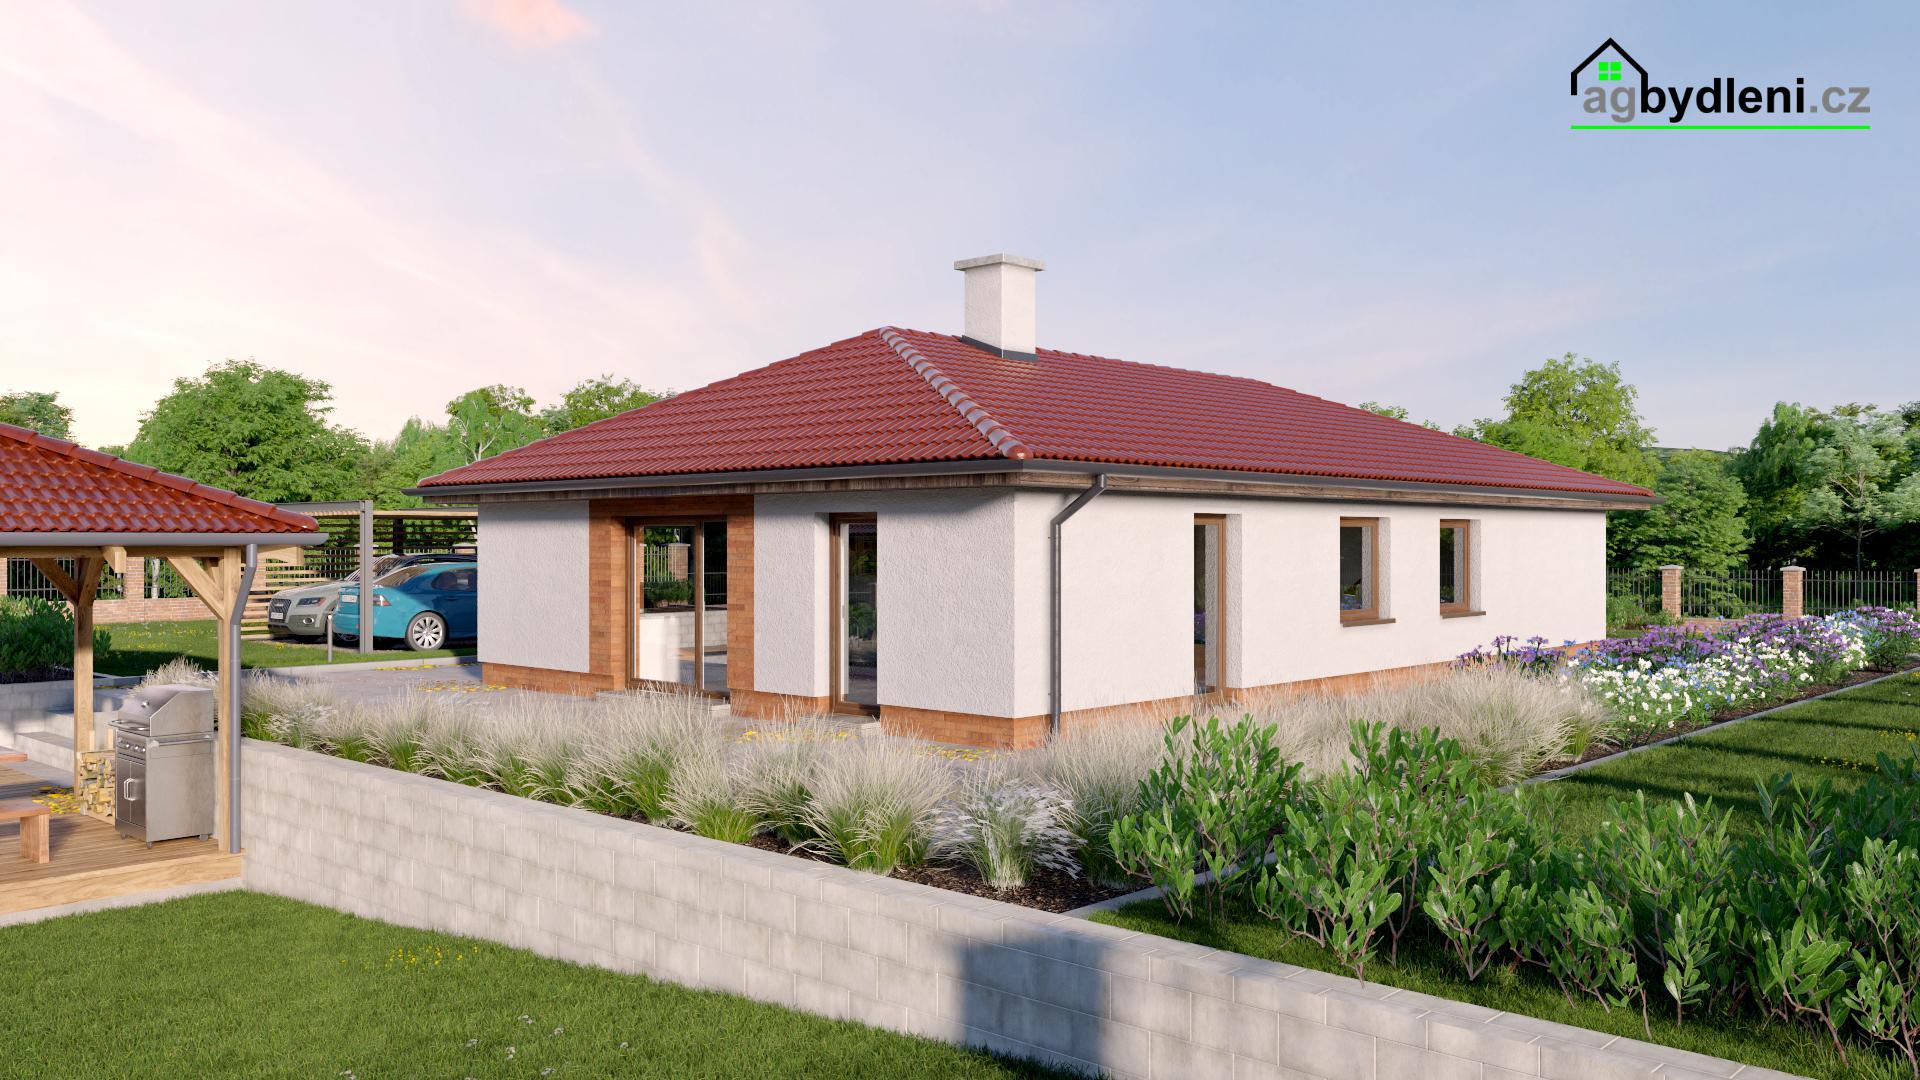 Prodej rodinného domu 104 m2 typu bungalov na zajištěném pozemku 1249 m2, obrázek č. 3